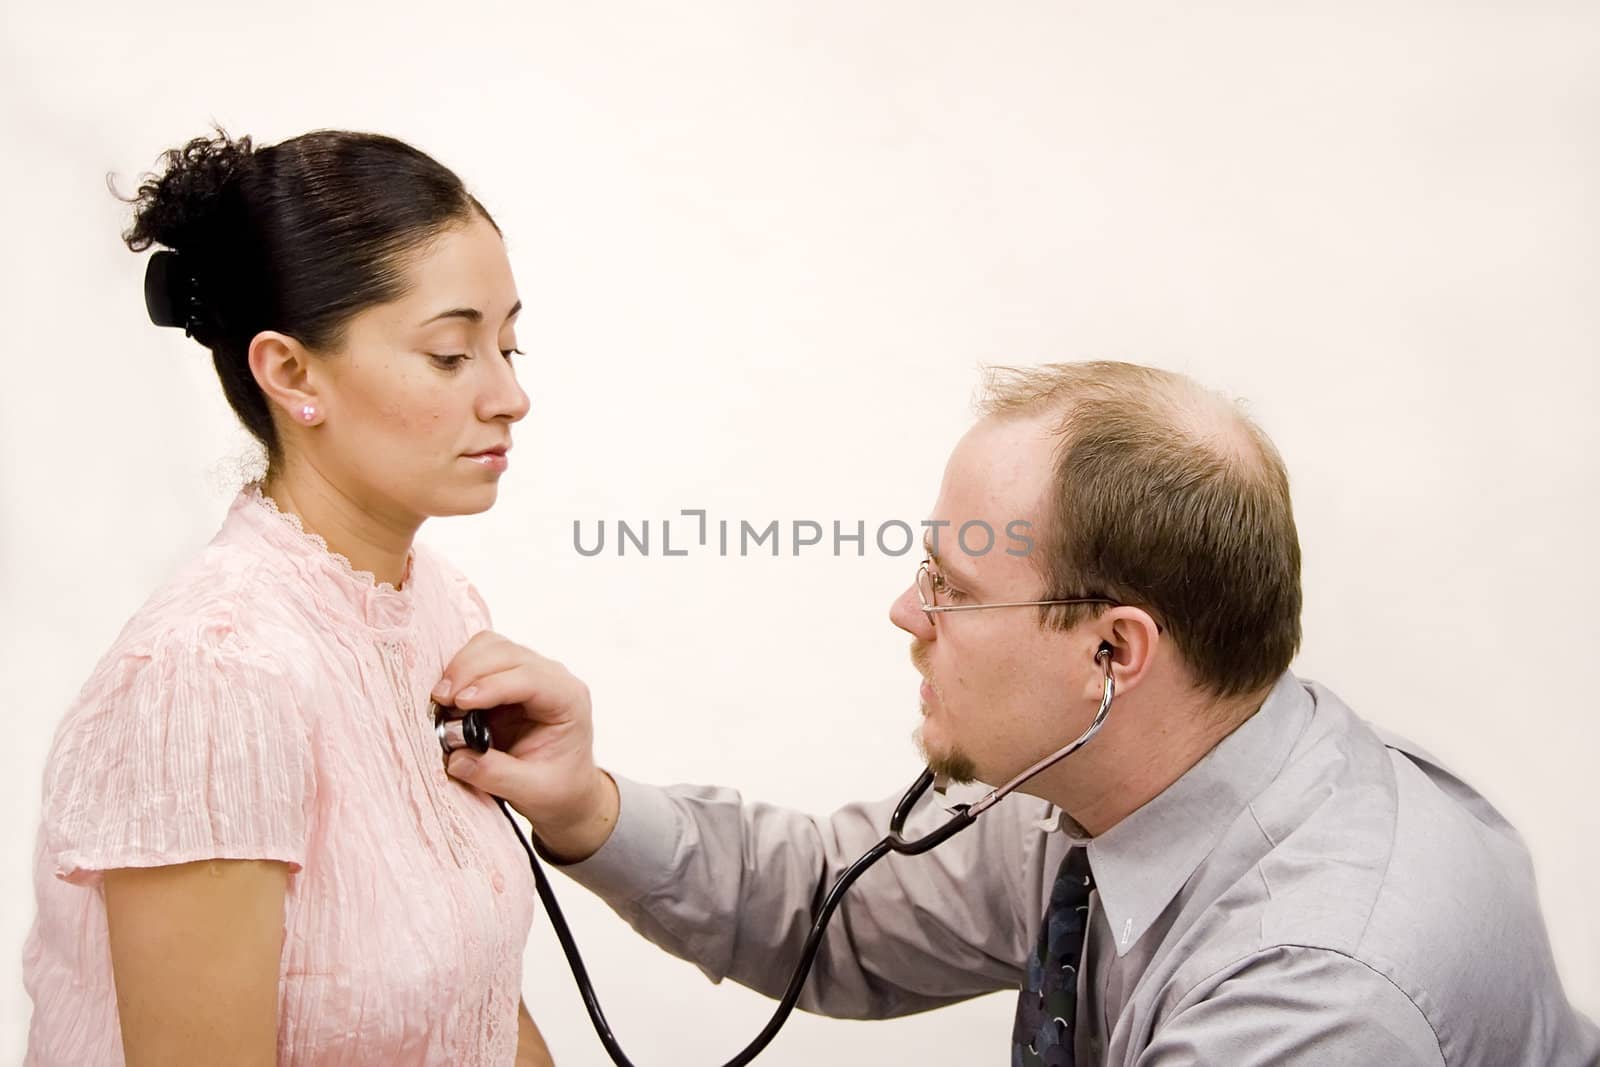 Doctor giving checkup to hispanic woman